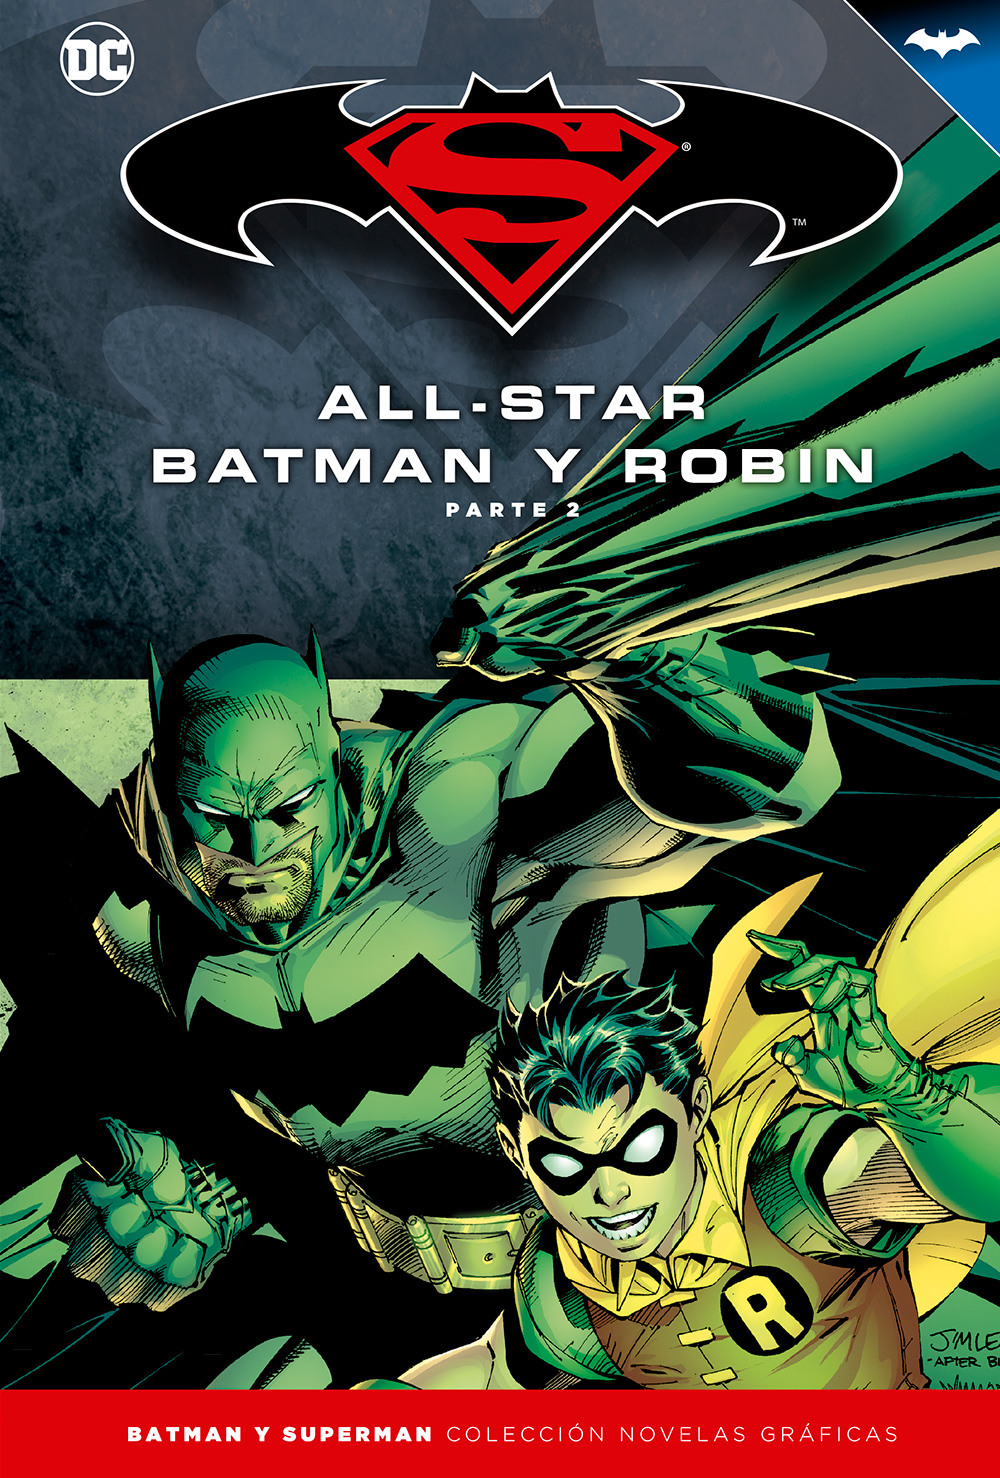 347 - [DC - Salvat] Batman y Superman: Colección Novelas Gráficas - Página 3 Portada_BMSM_3_AllStarBatman2